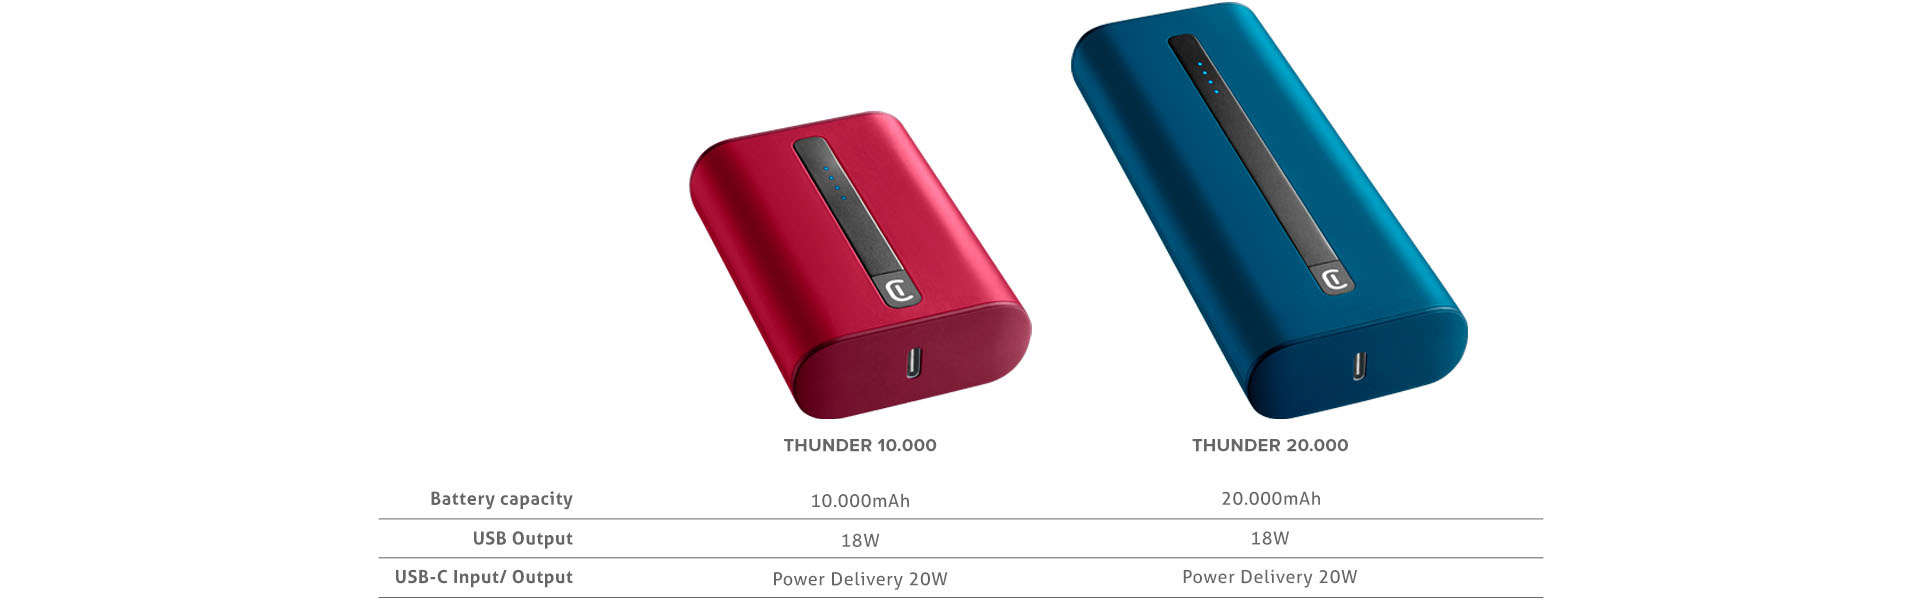 CELLULAR LINE Powerbank Thunder (5000 mAh) acquisto online in modo  economico e sicuro 